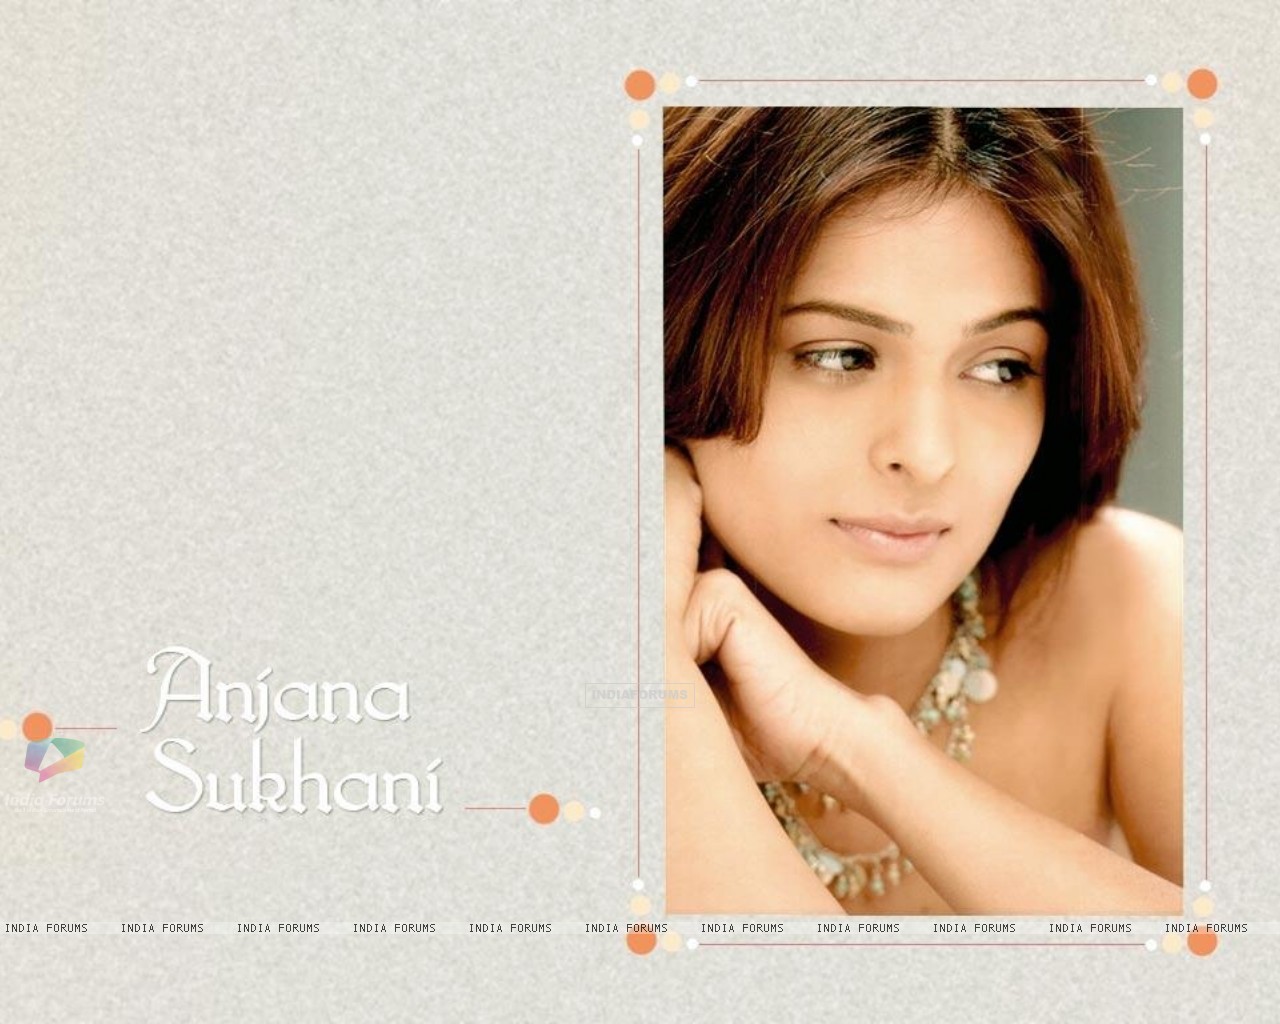 Anjana Sukhani - Wallpaper Hot